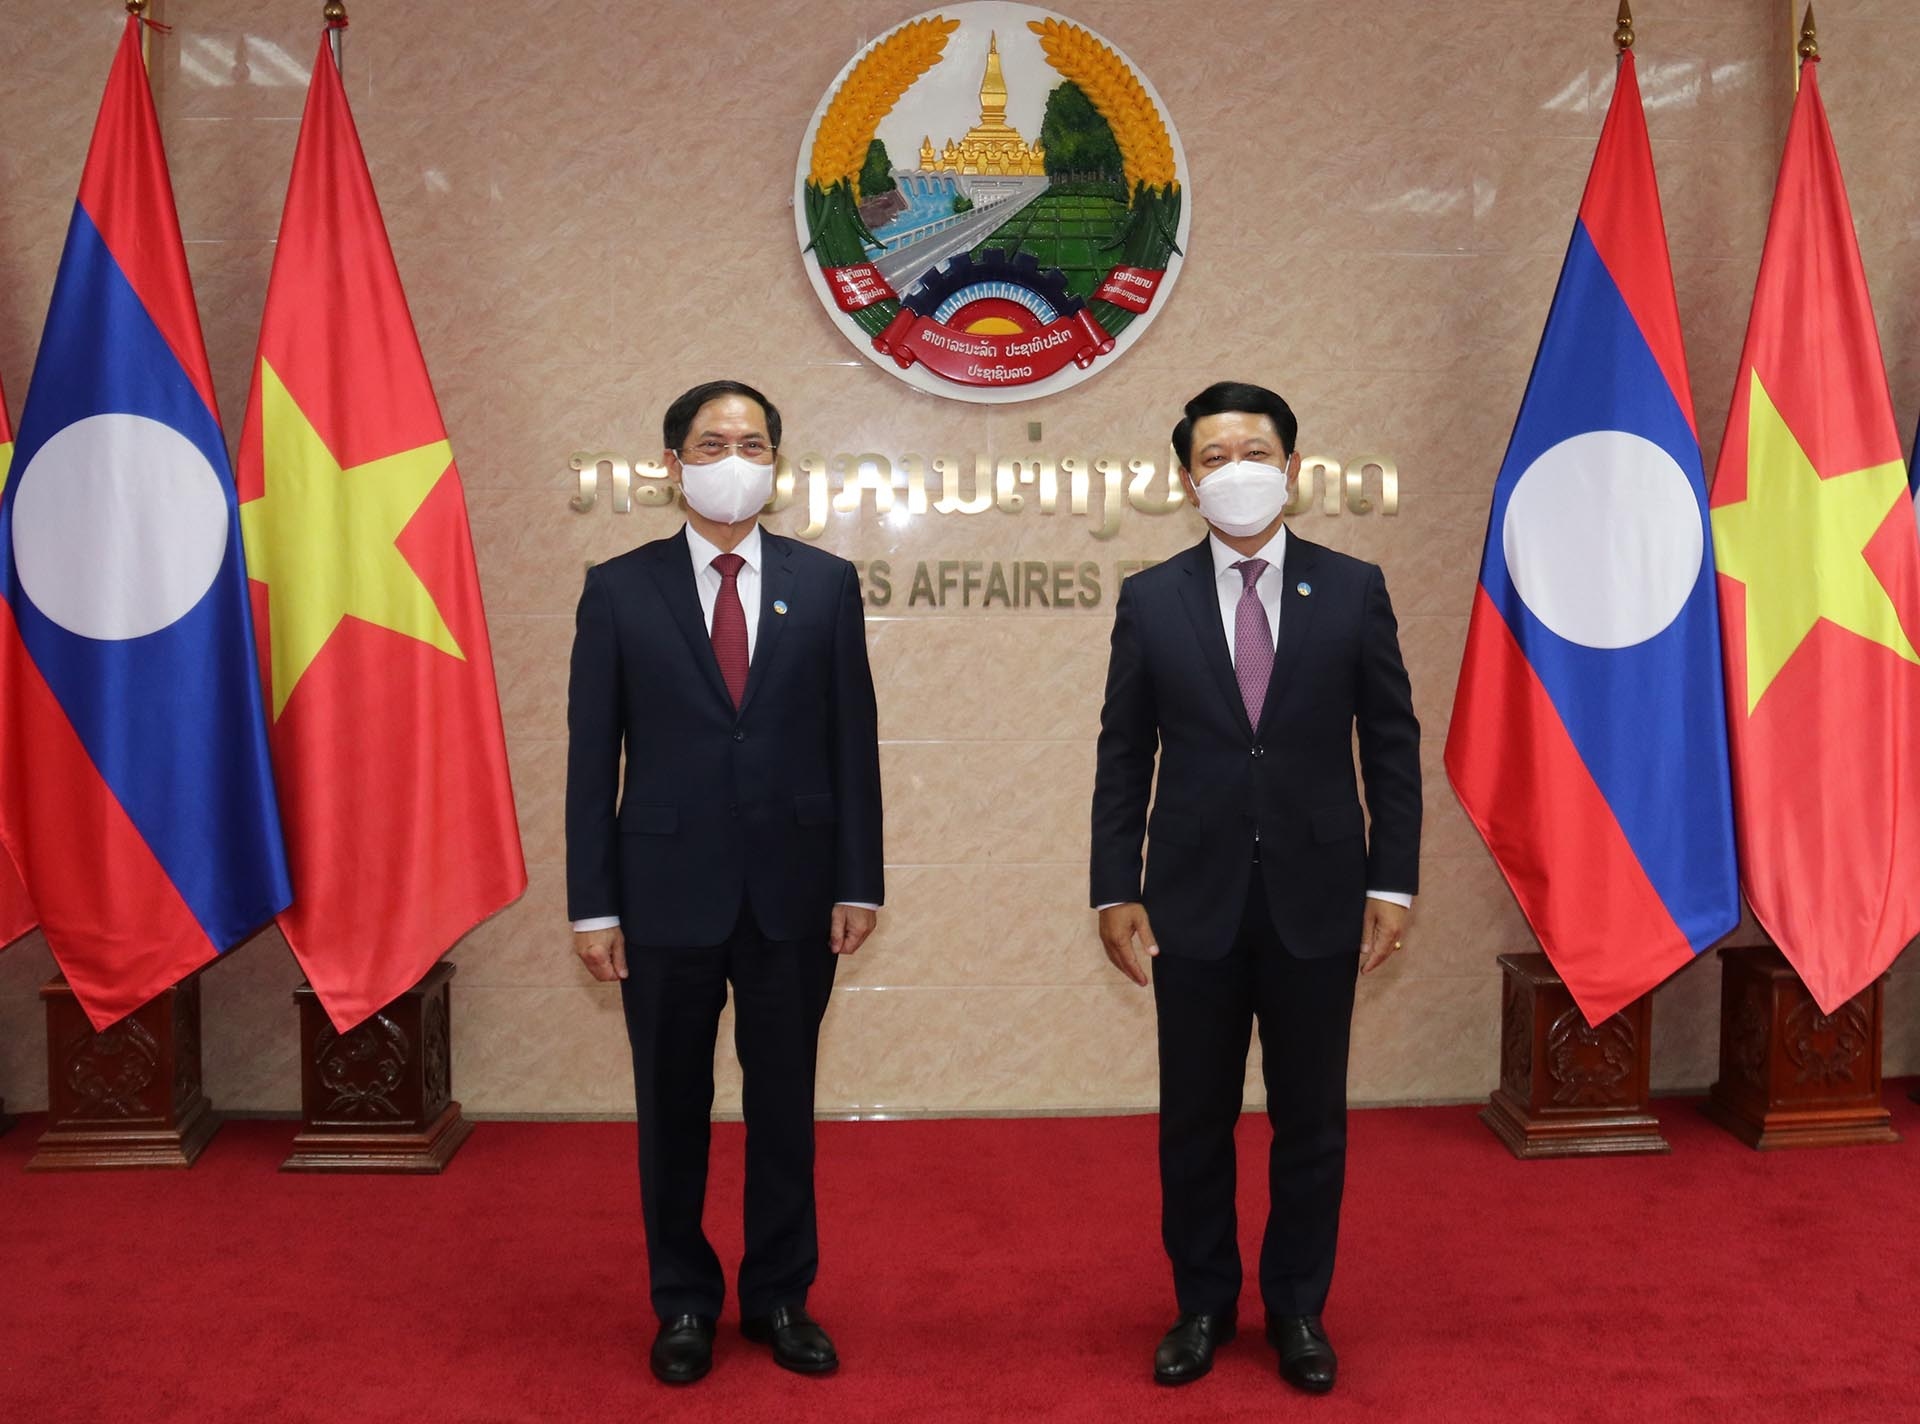 Bộ trưởng Bộ Ngoại giao Bùi Thanh Sơn gặp làm việc với Bộ trưởng Ngoại giao Lào Saleumxay Kommasith. (Nguồn: TTXVN)